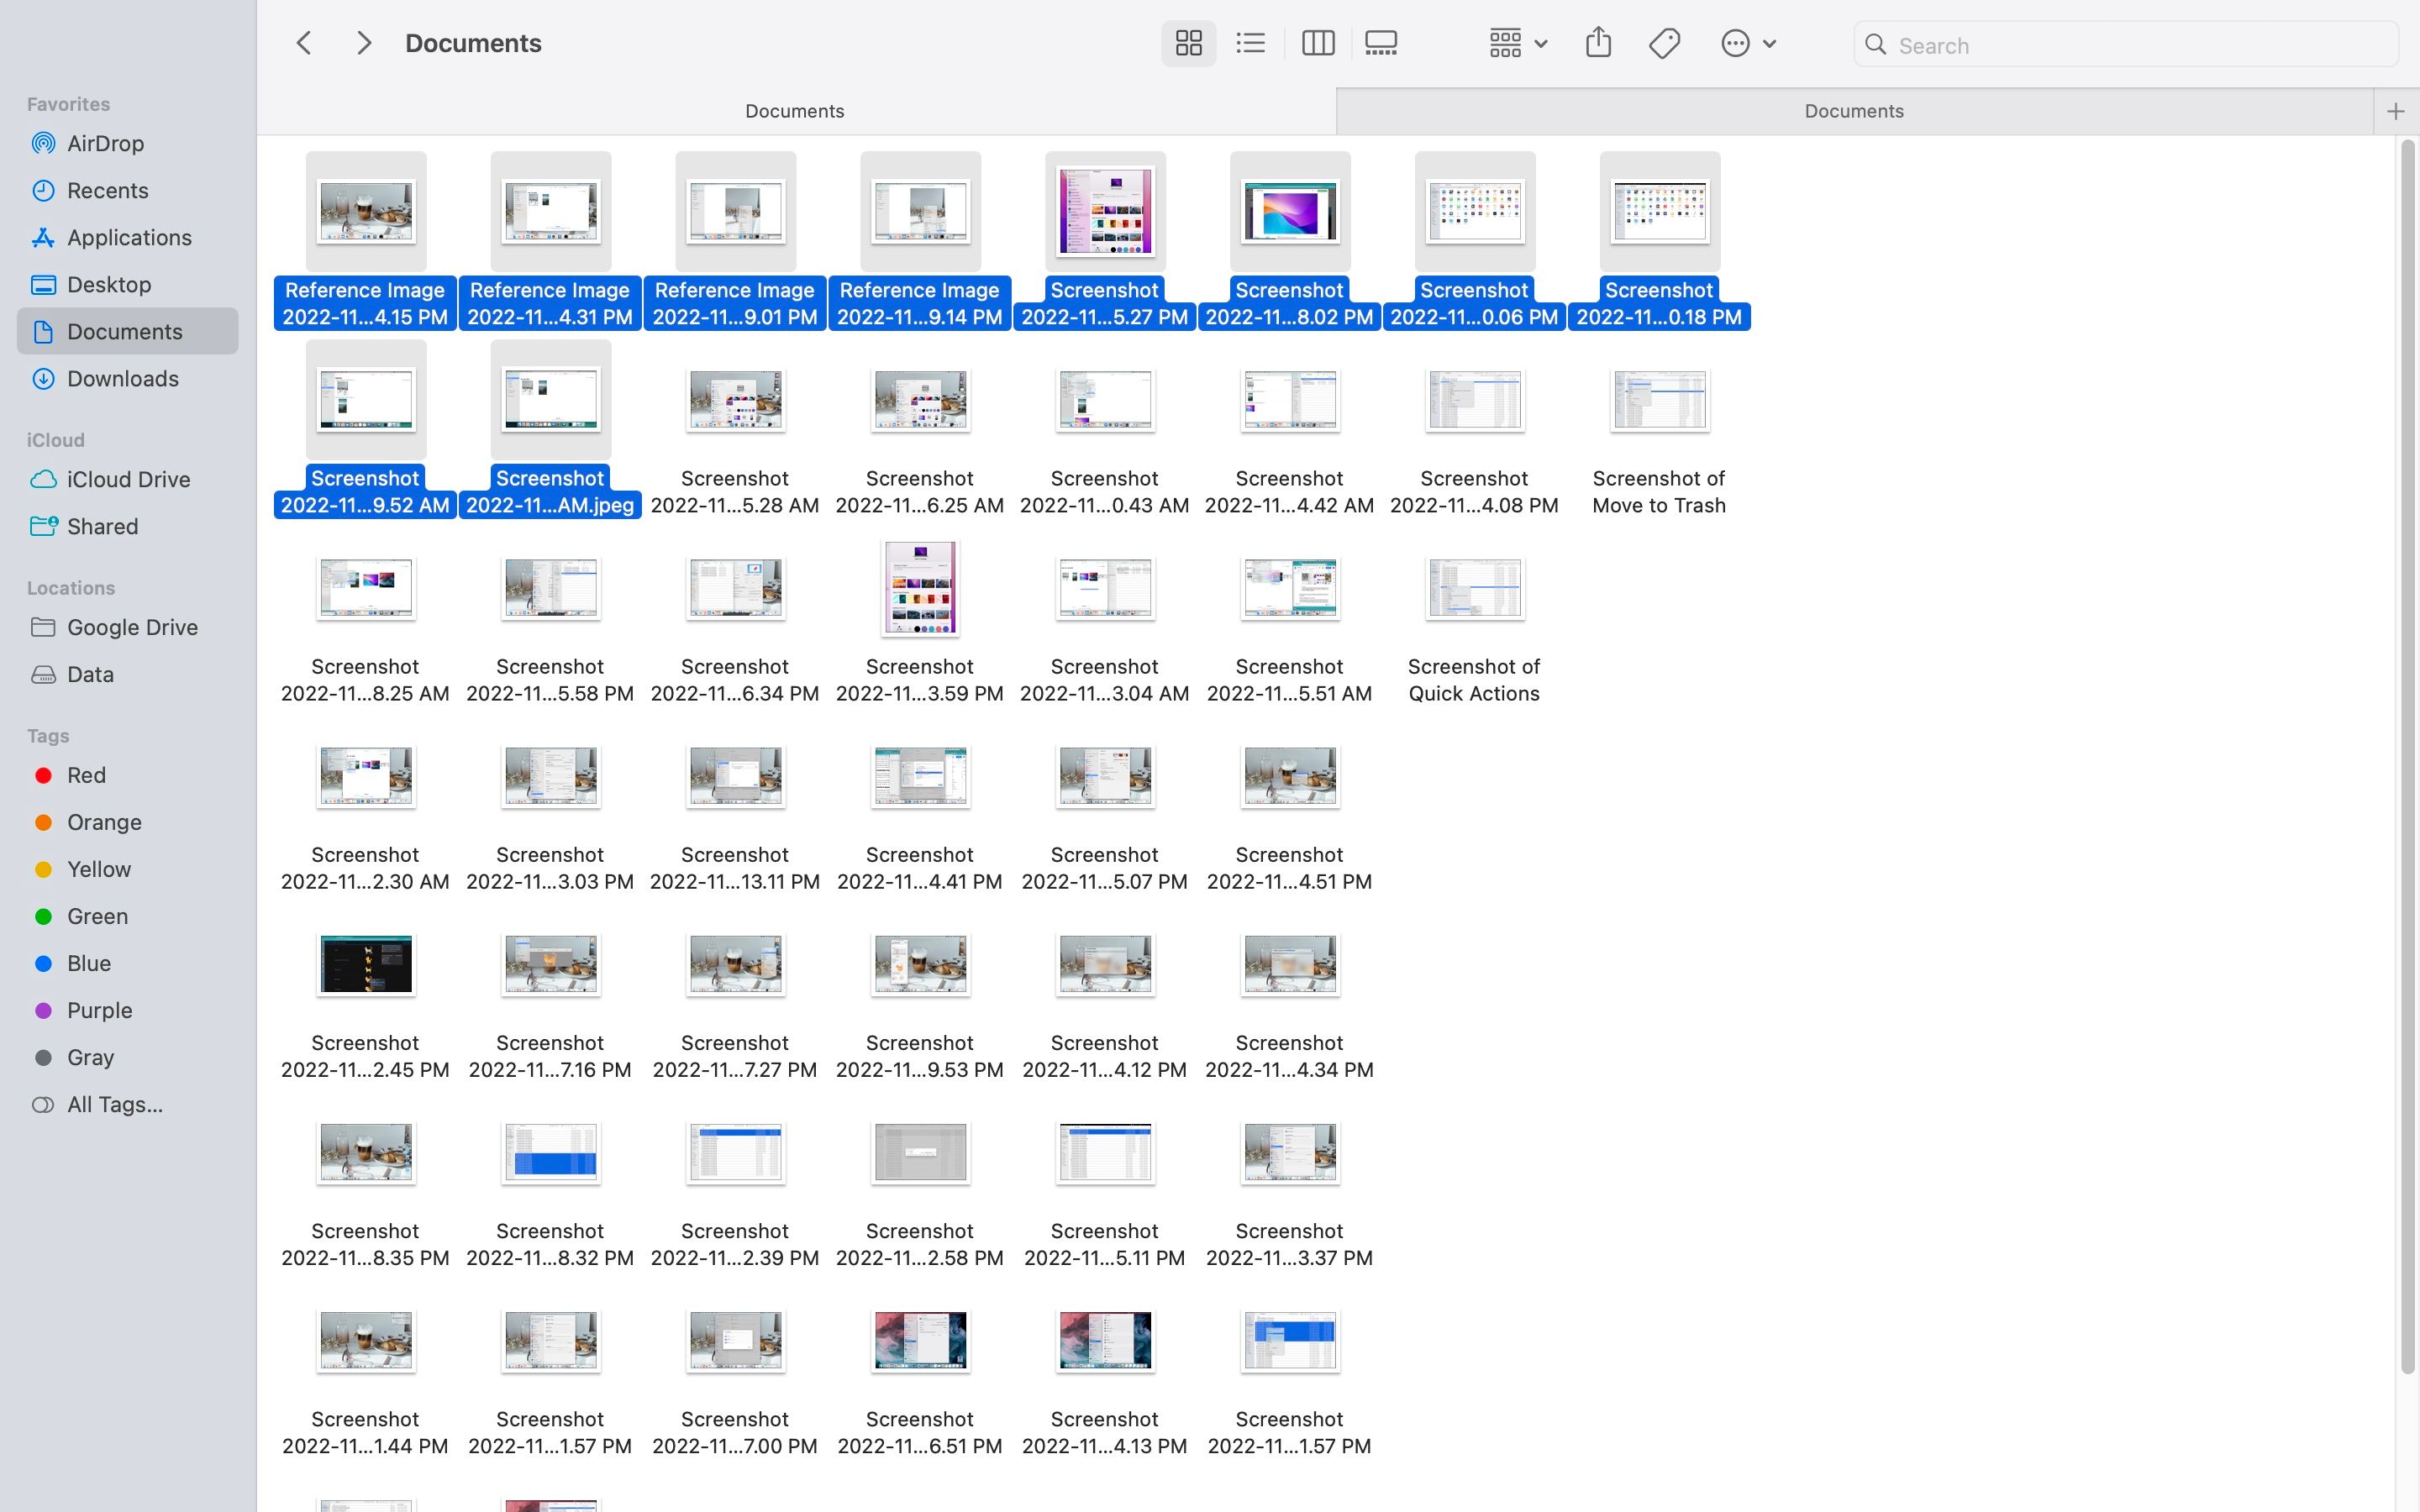 Captura de pantalla de la selección de archivos con Shift